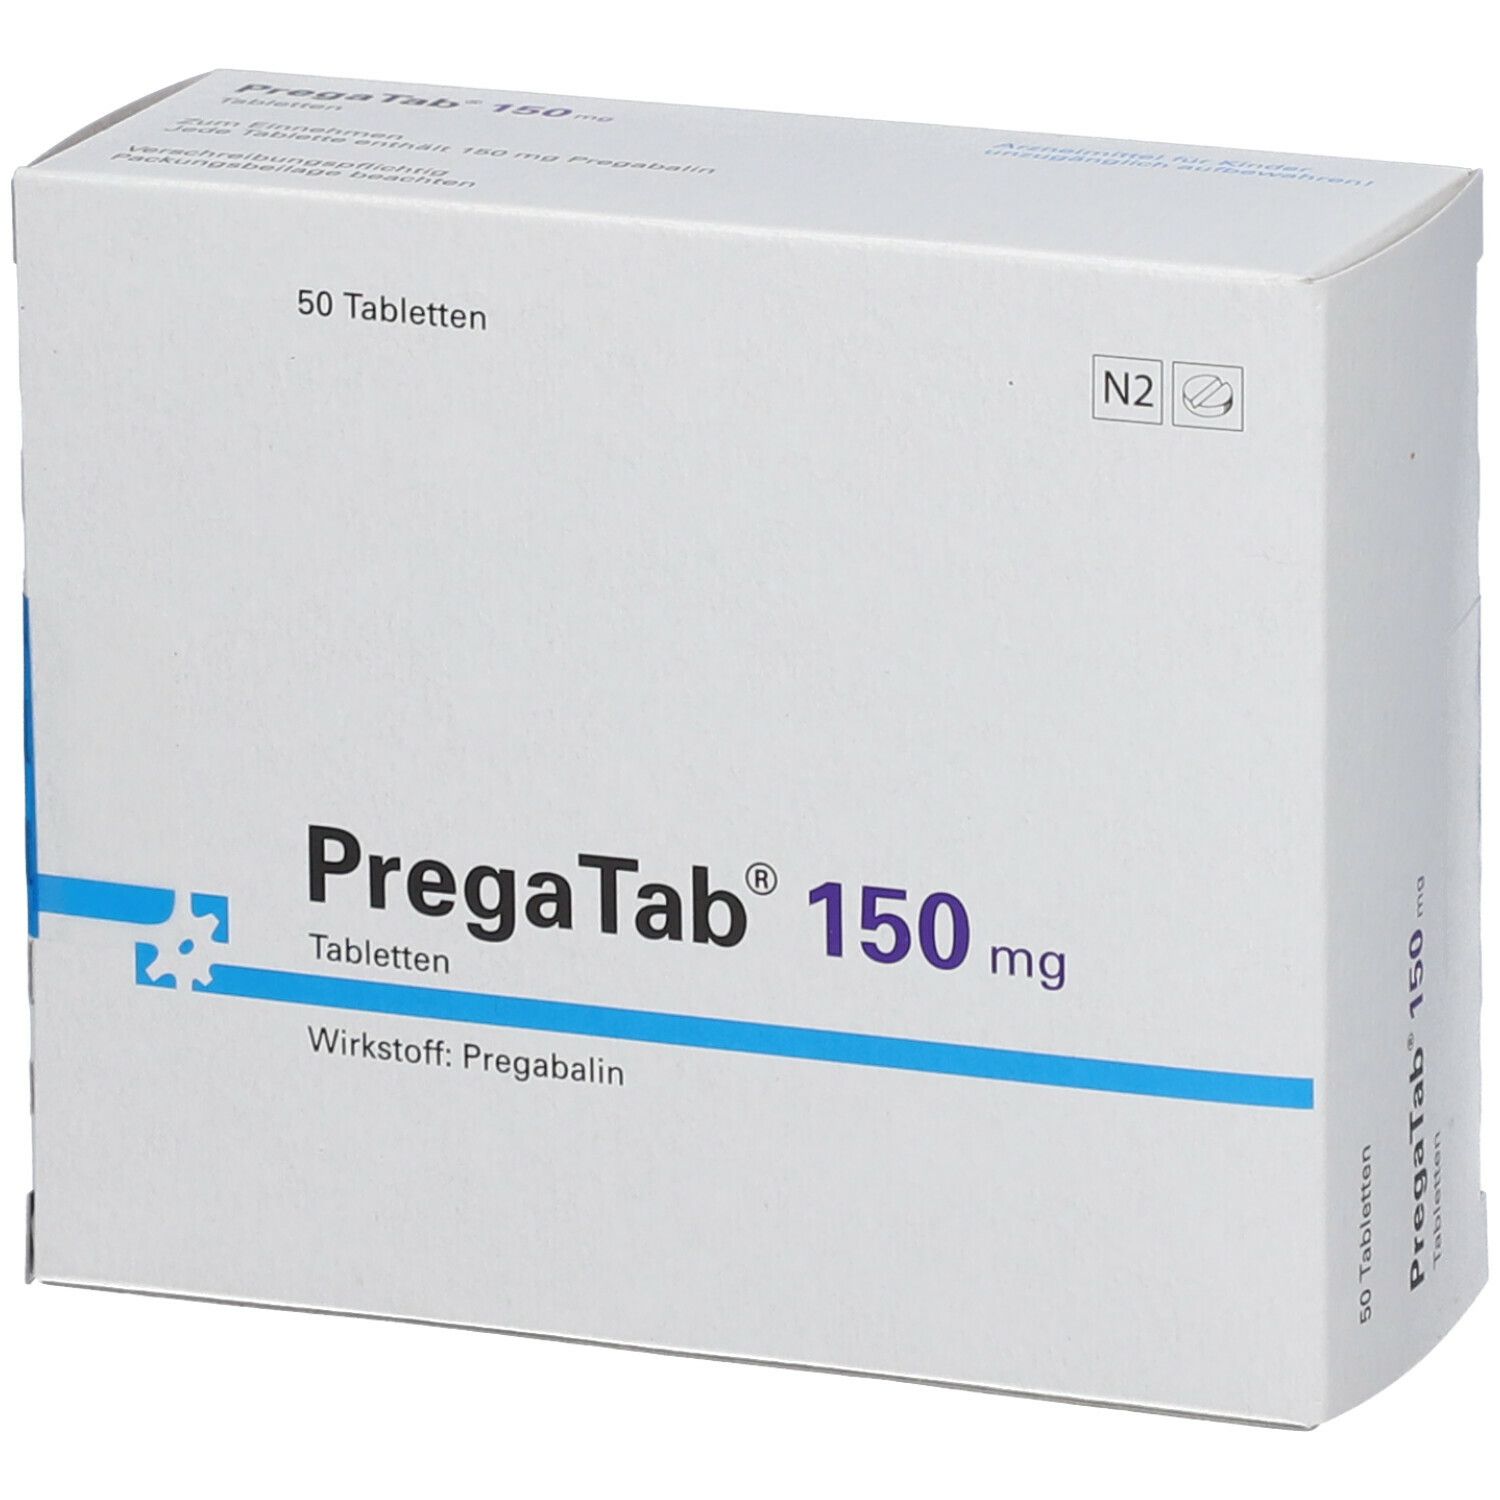 PregaTab® 150 mg